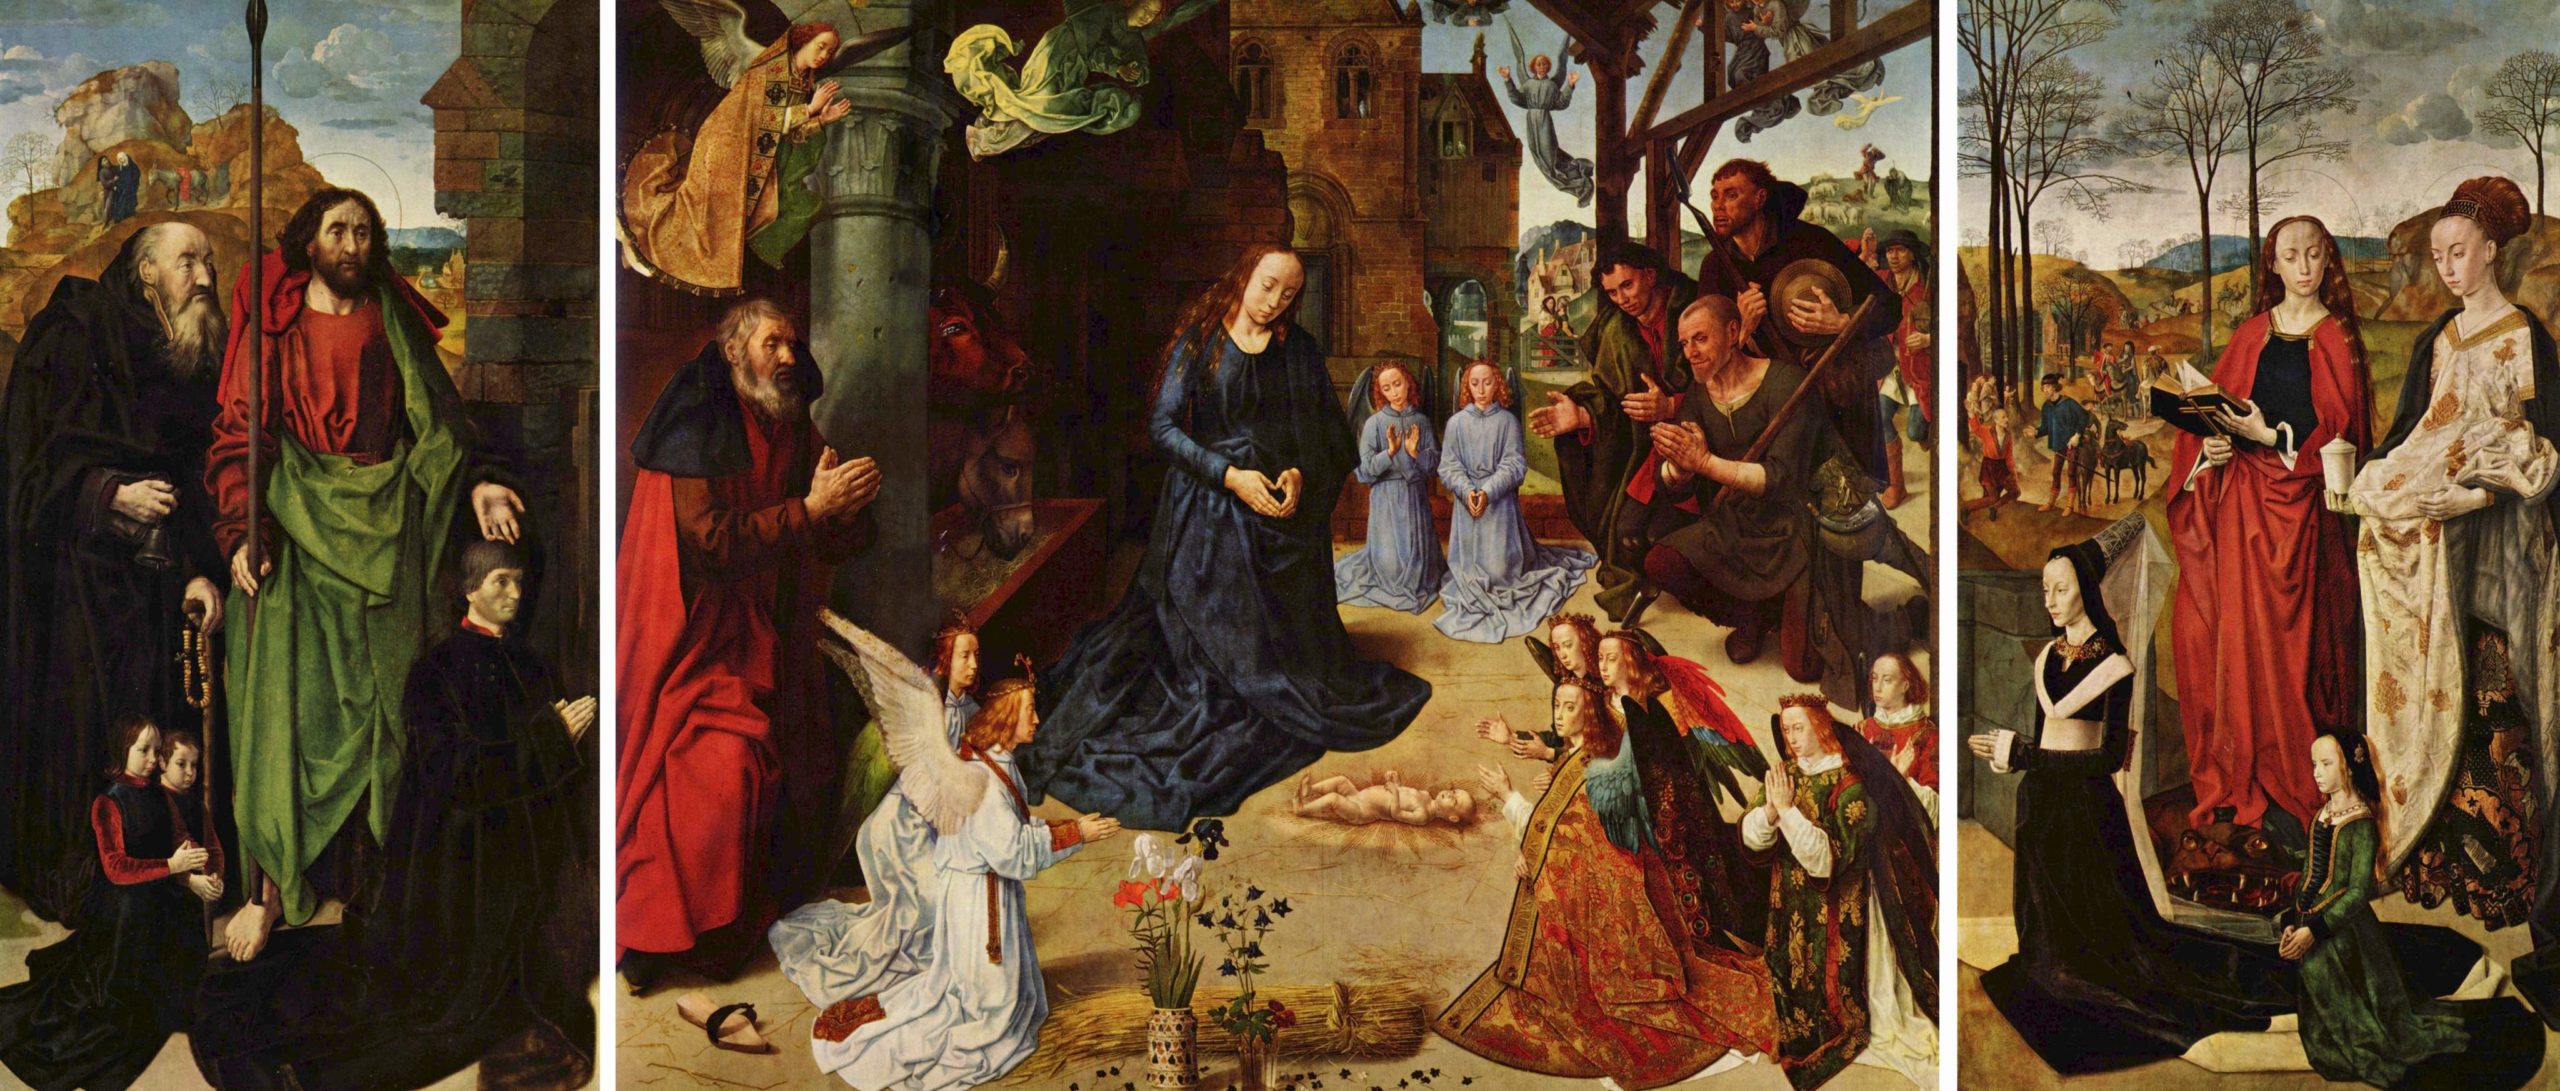 Hugo van der Goes, Portinari Altarpiece, c. 1476, oil on wood, 274 x 652 cm when open (Uffizi)